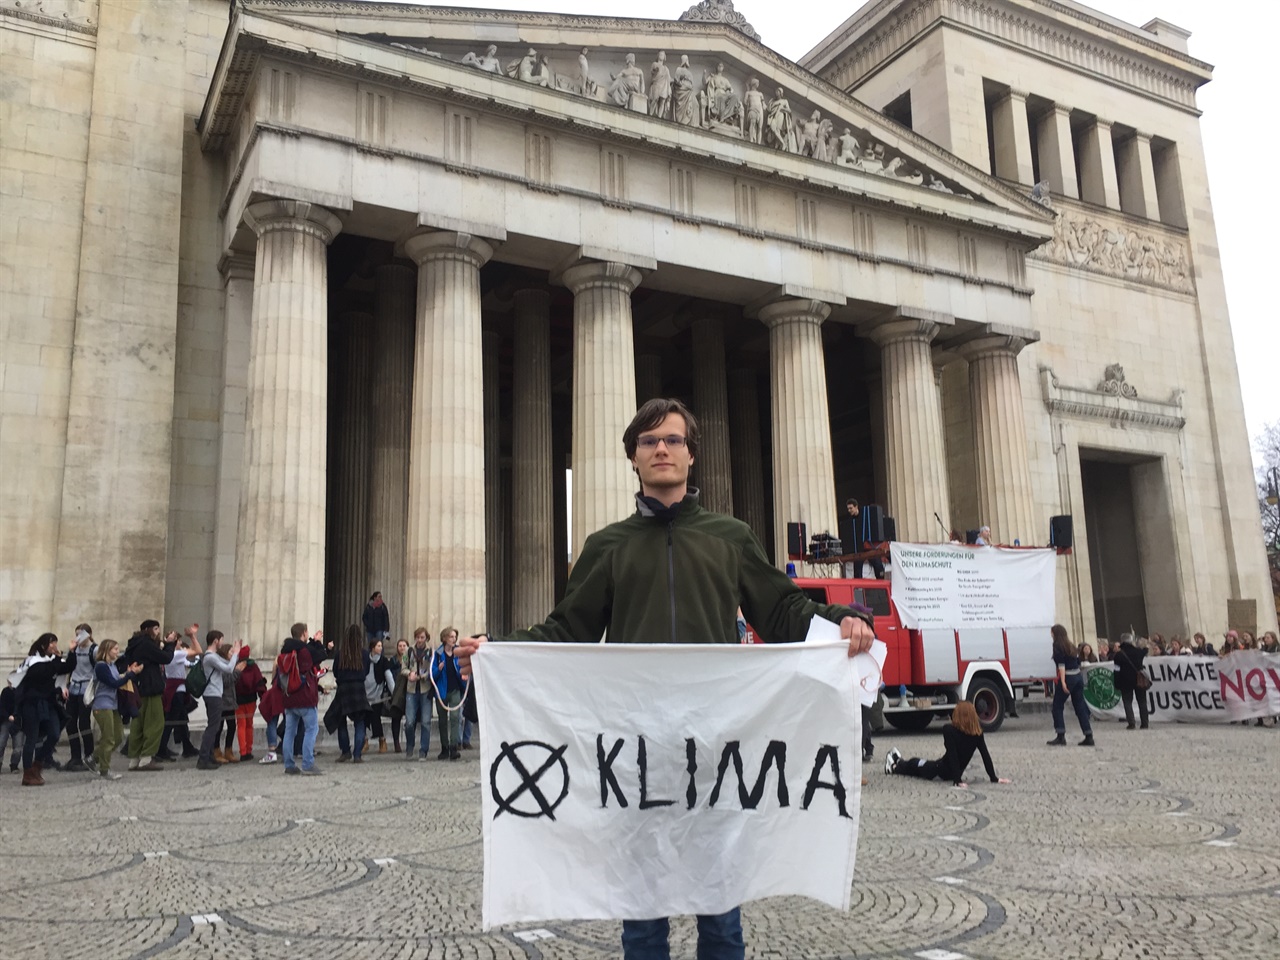 뮌헨공대에서 태양에너지보존을 연구하는 레온하드(Leonhard) 활동가는 현재 Fridays For Future 뮌헨지부에서 활발한 활동을 하고 있다. 지난 2014년 당시 17세였던 그는 환경단체 그린피스에 청년 활동가로 가입하며 그간 다양한 지식과 경험을 쌓아왔다.